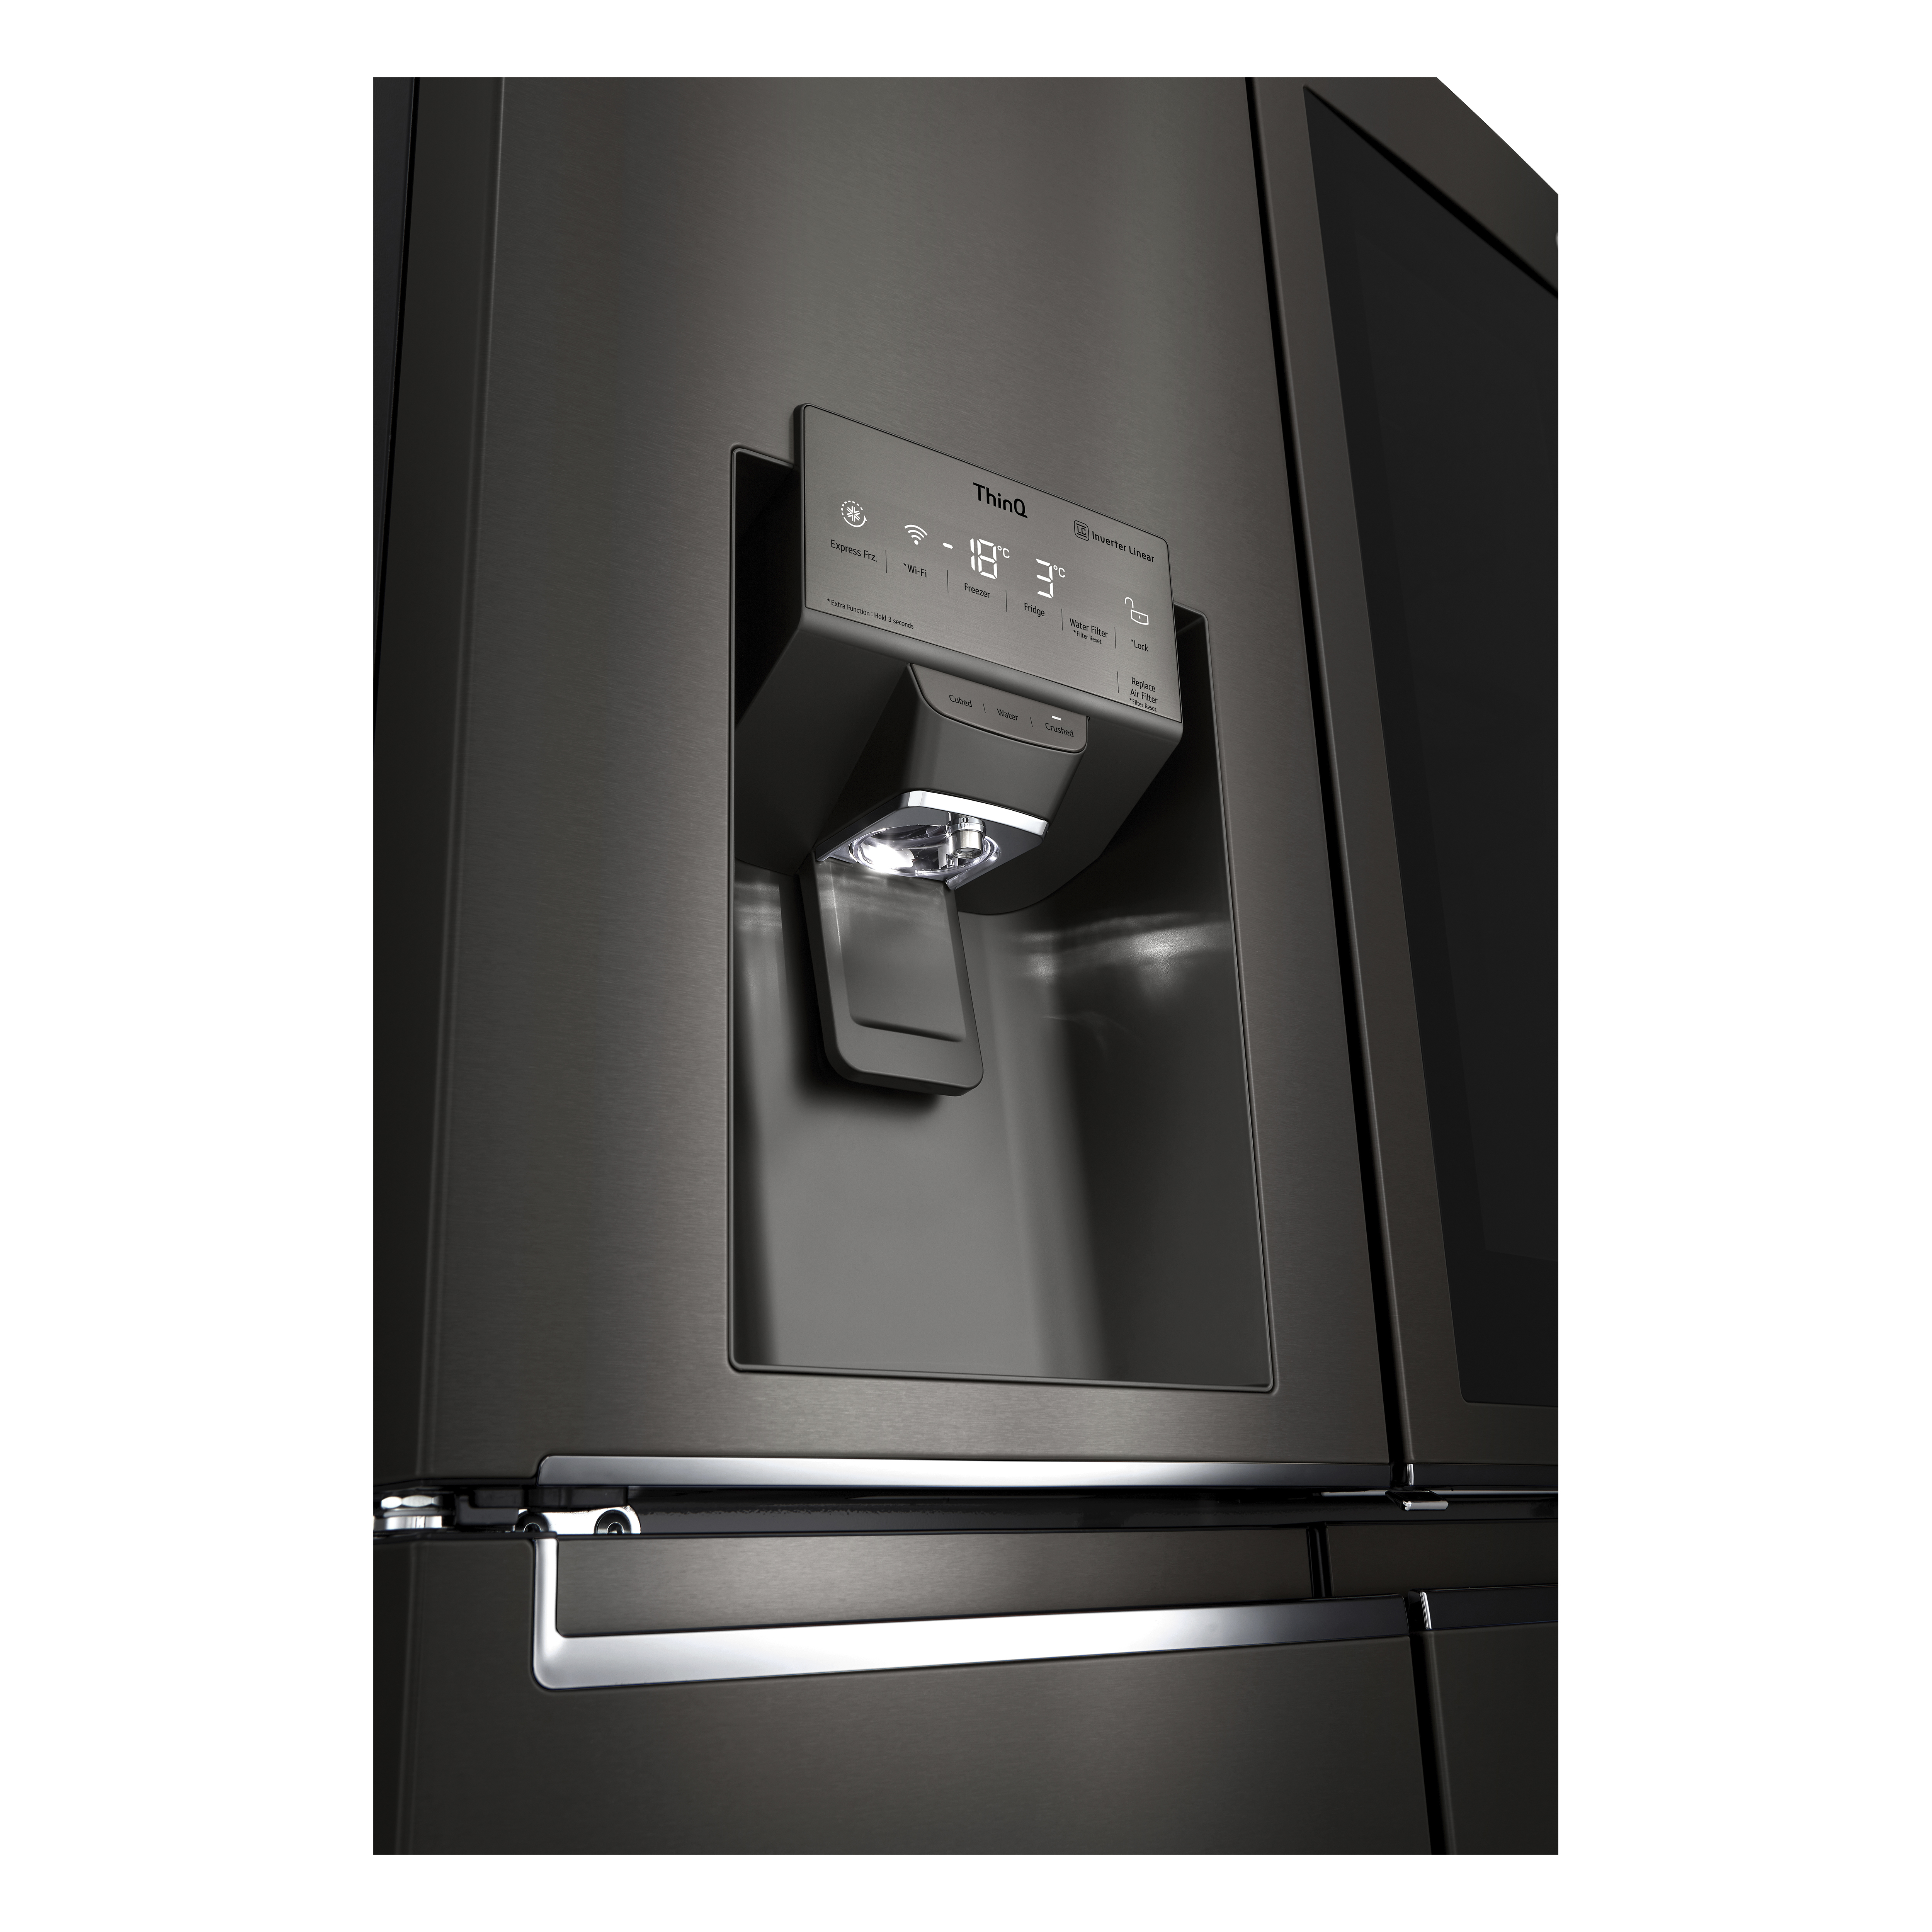 LG trae a España los nuevos frigoríficos American Combi con luz ultravioleta